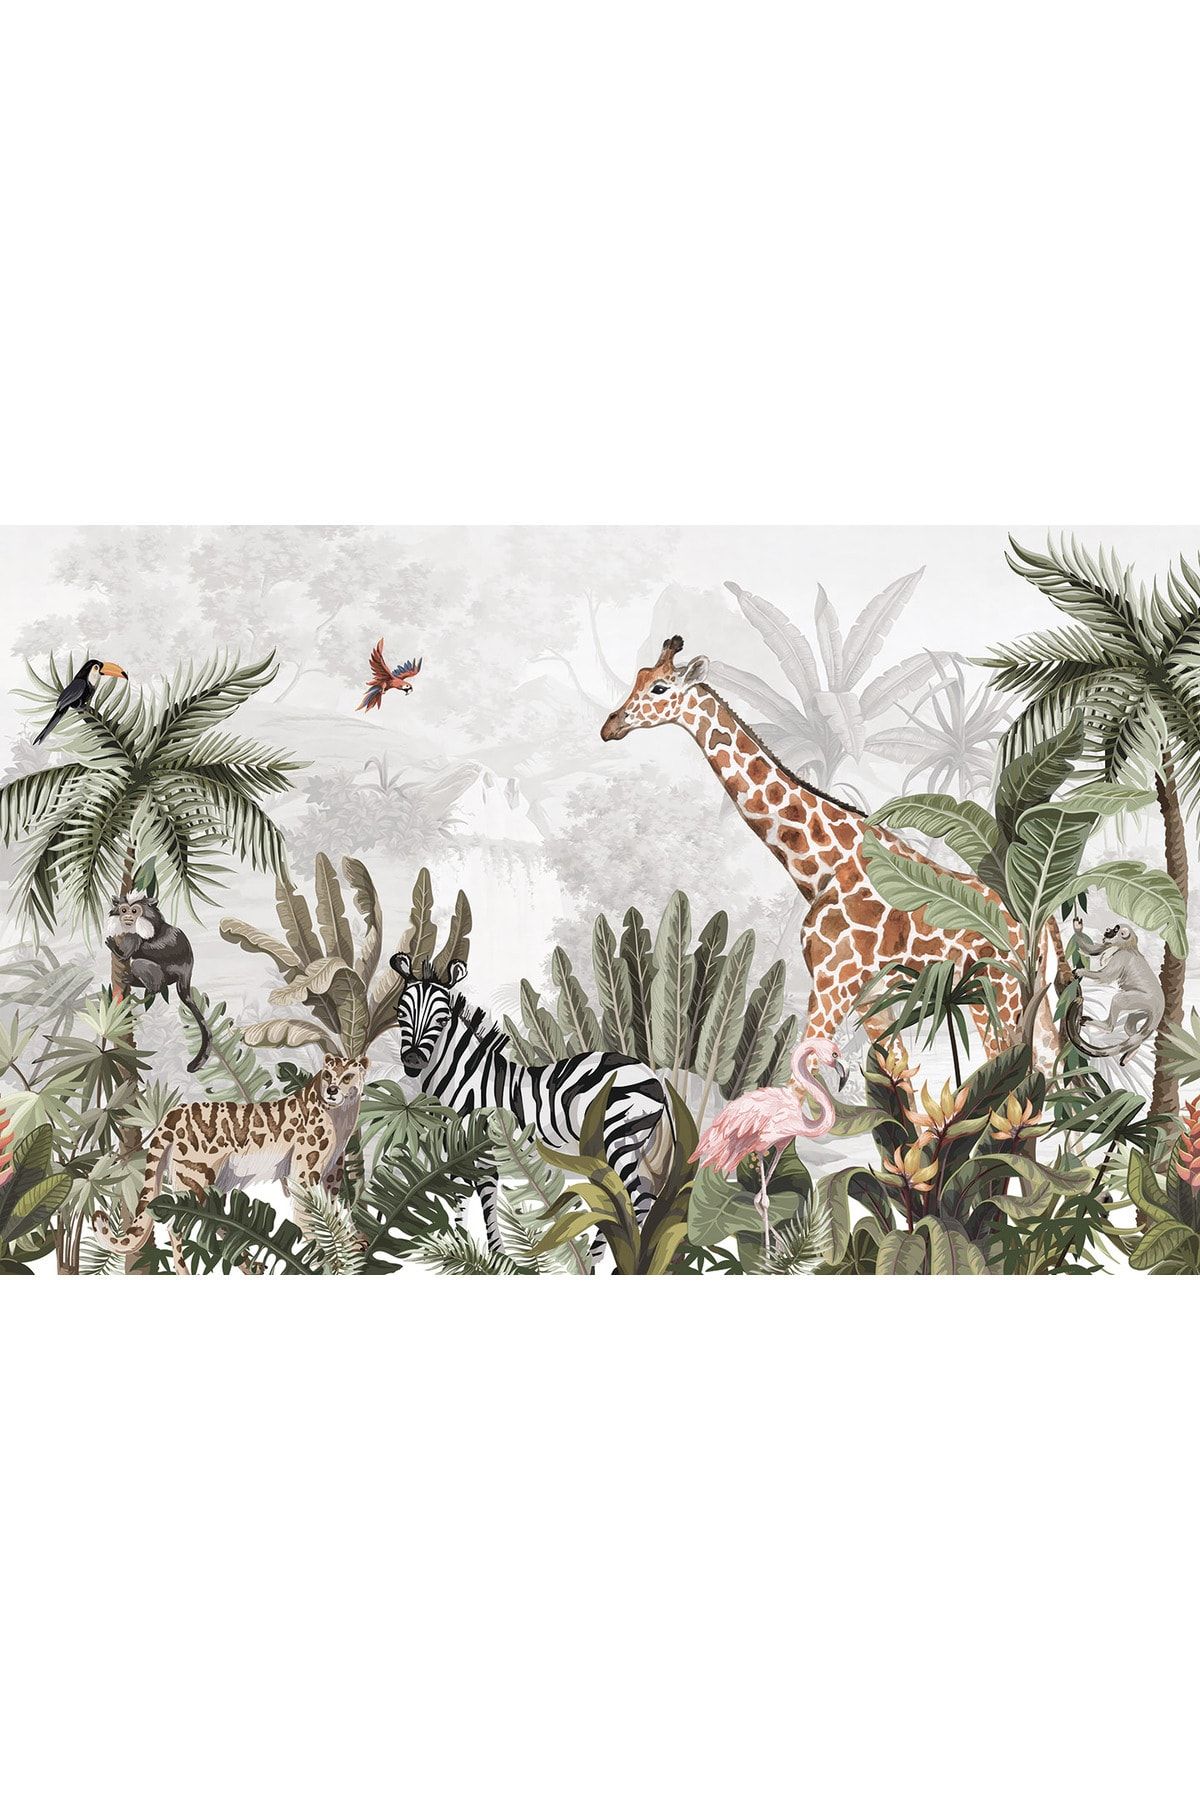 LOTUS AURA Afrika Safari Çocuk Odası Duvar Kağıdı, Sevimli Orman Hayvanları Duvar Resmi